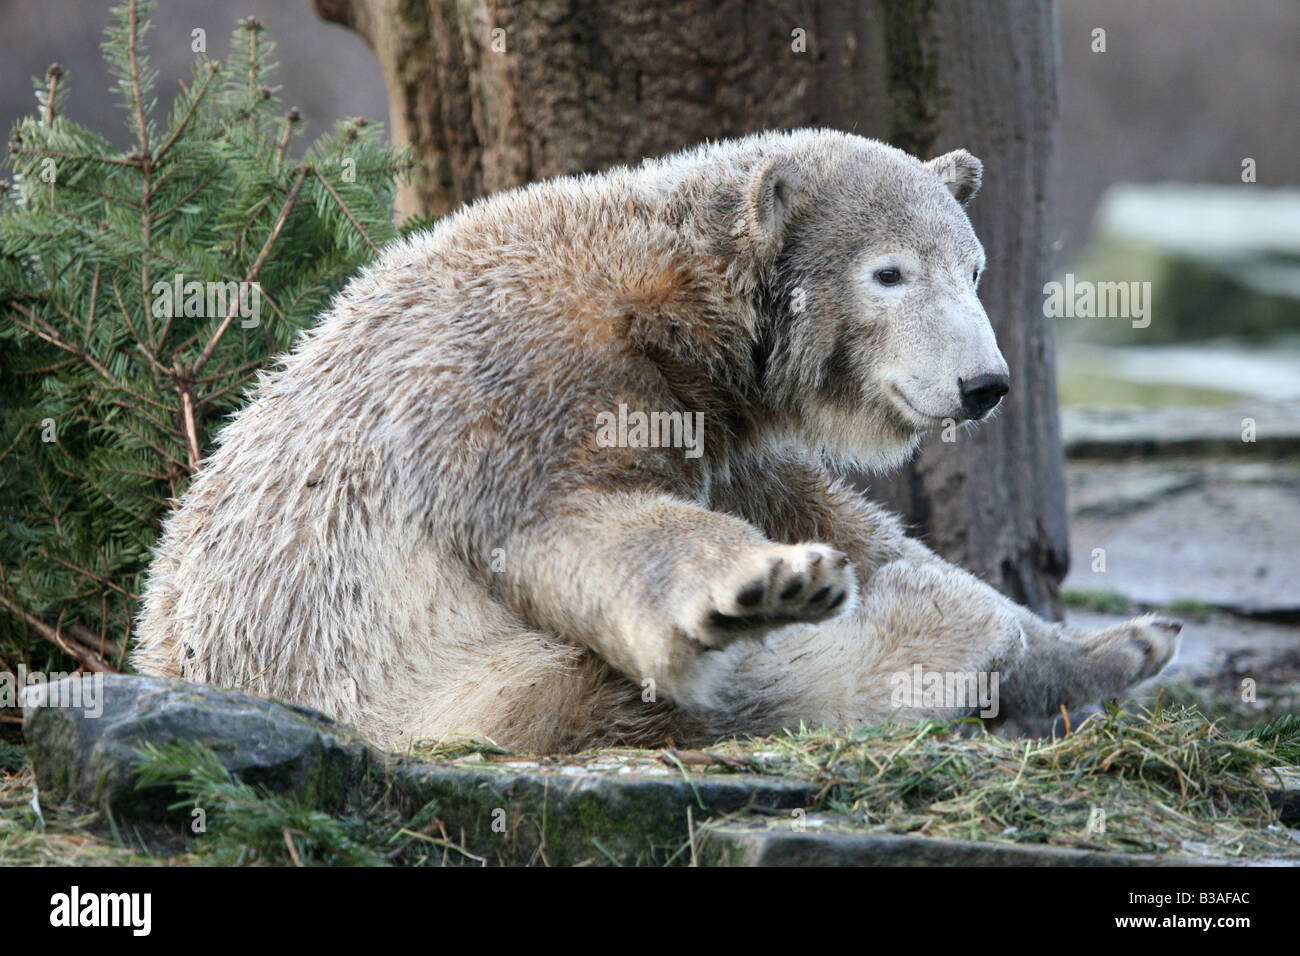 Knut l'ours polaire (Ursus maritimus) cub bénéficiant dans son enclos au zoo de Berlin, Allemagne Banque D'Images